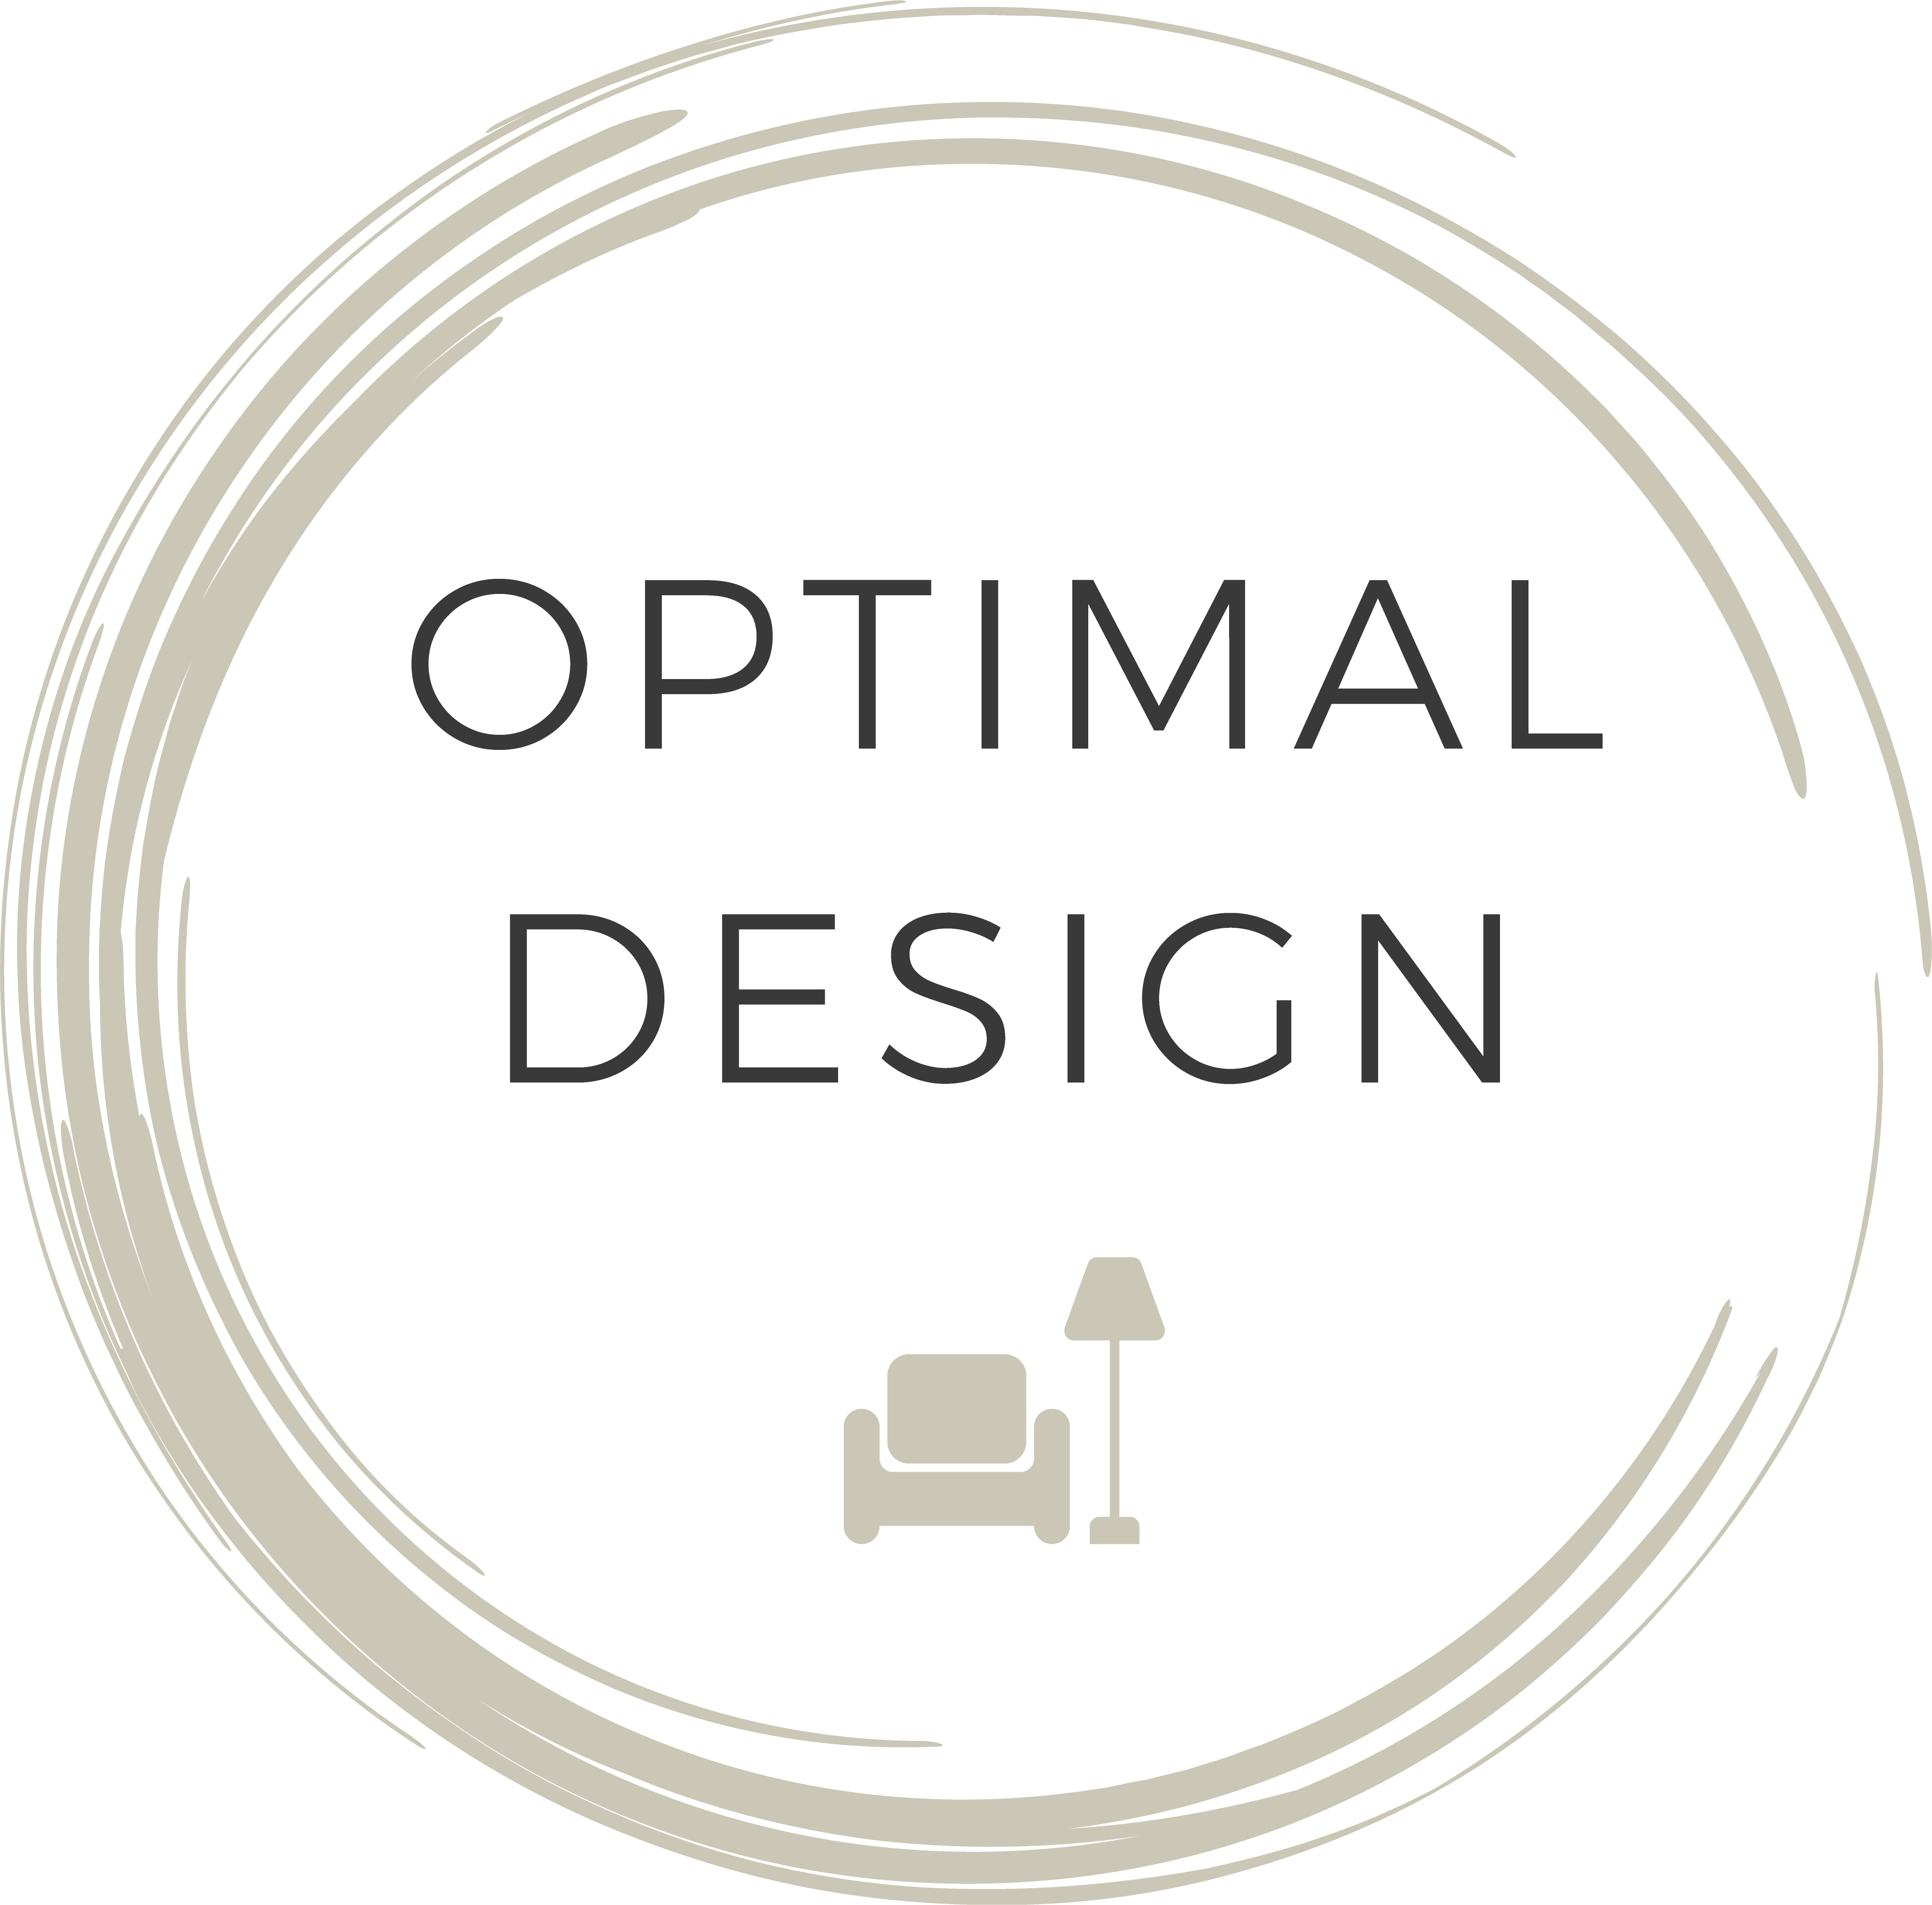 Optimal design